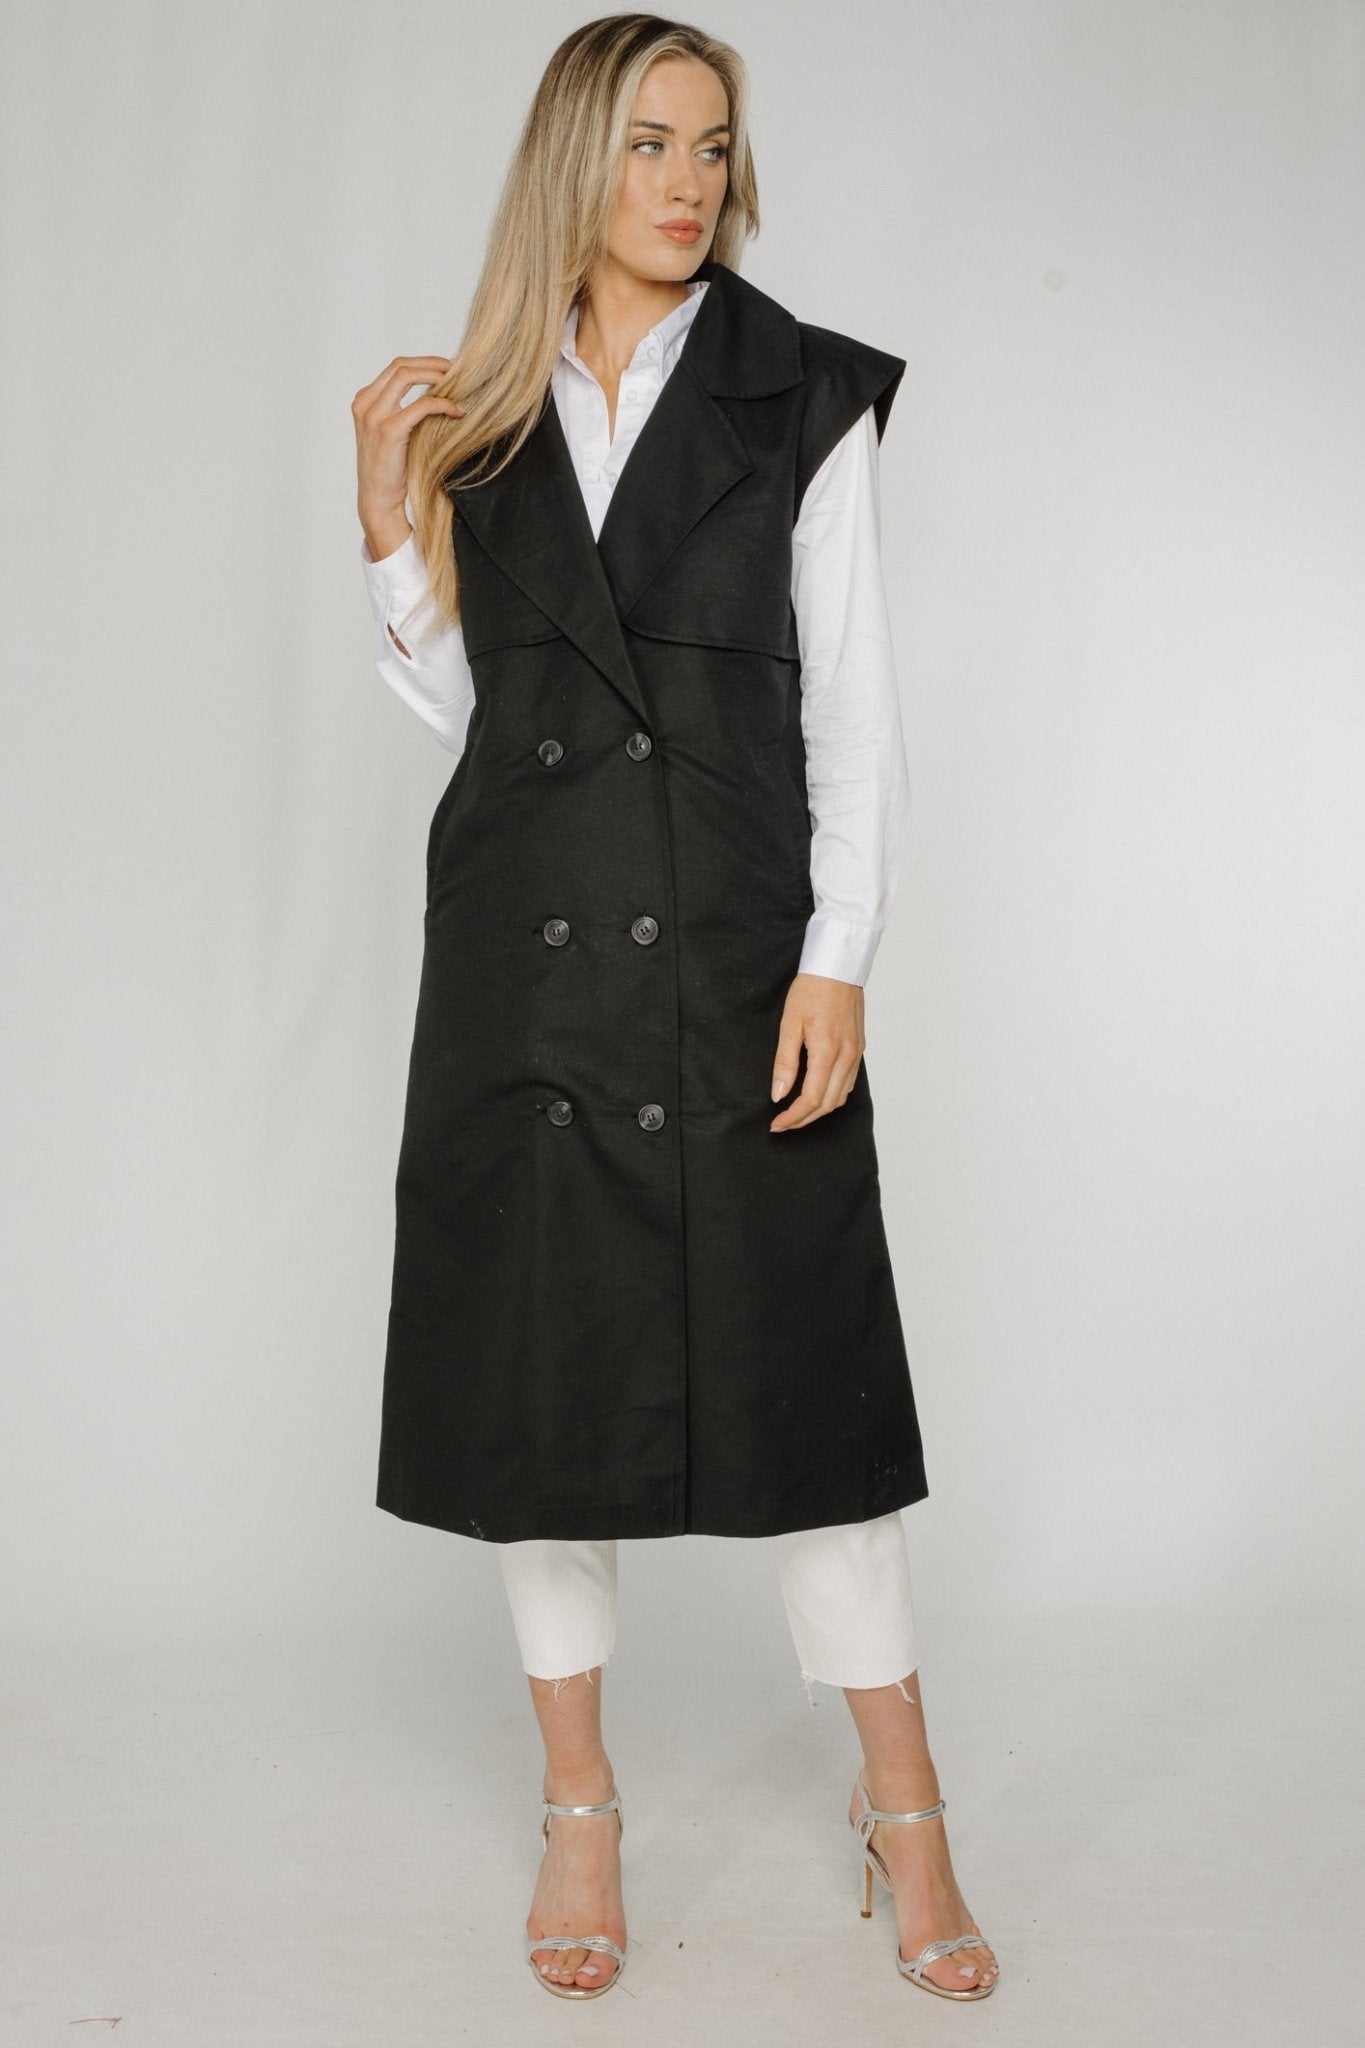 Ella Sleeveless Trench Coat In Black - The Walk in Wardrobe